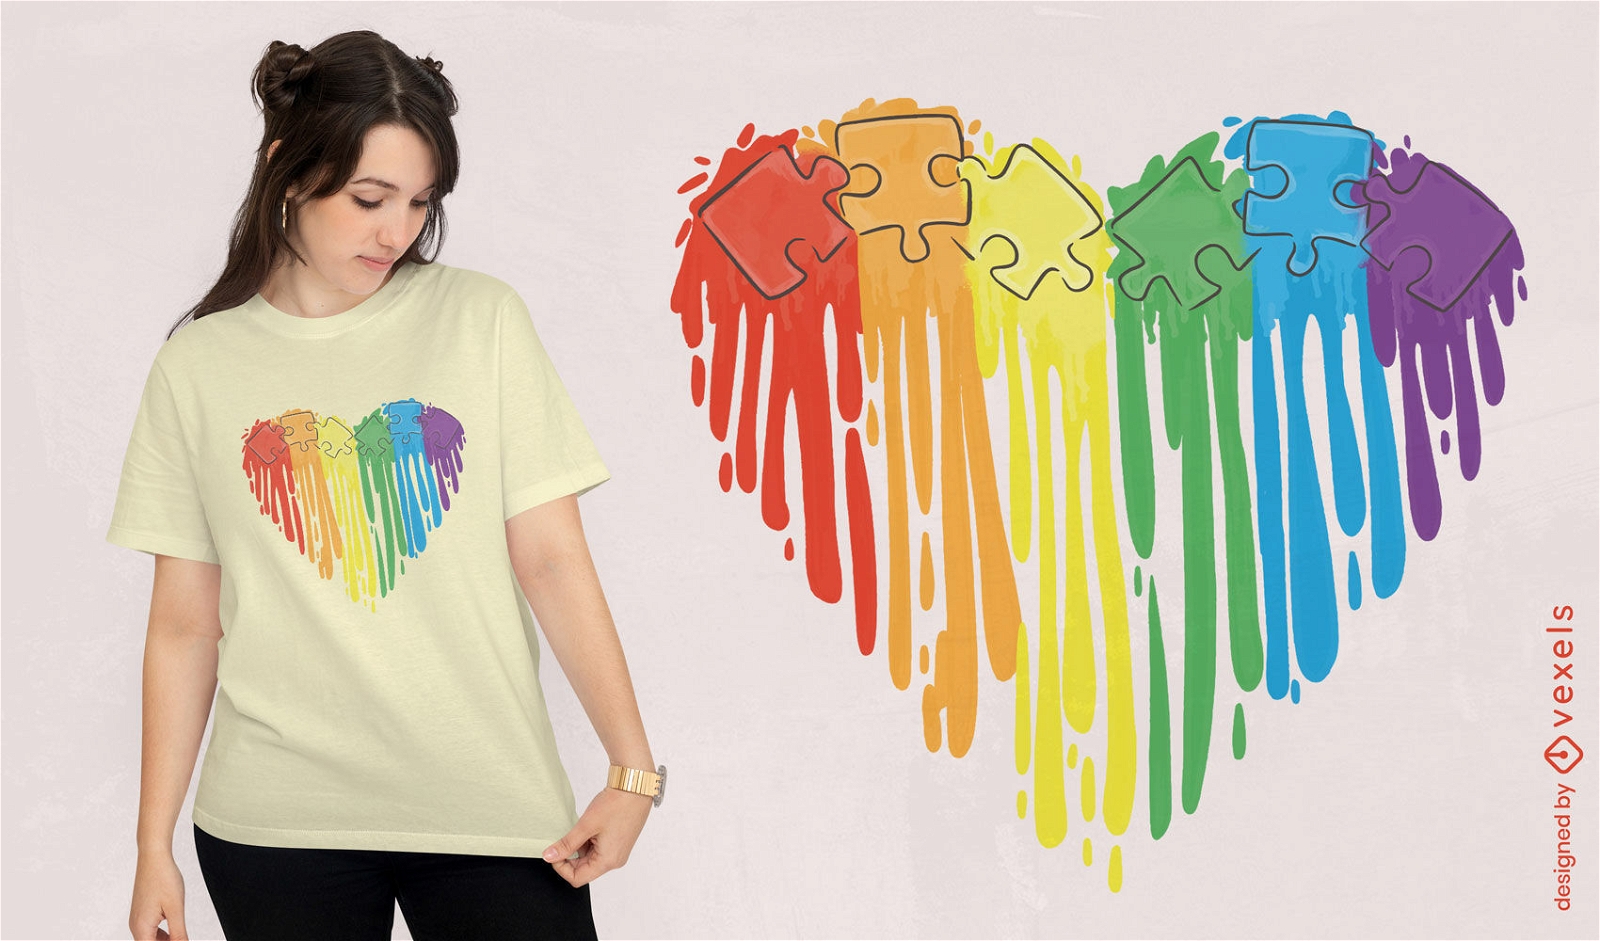 Autism awareness heart t-shirt design